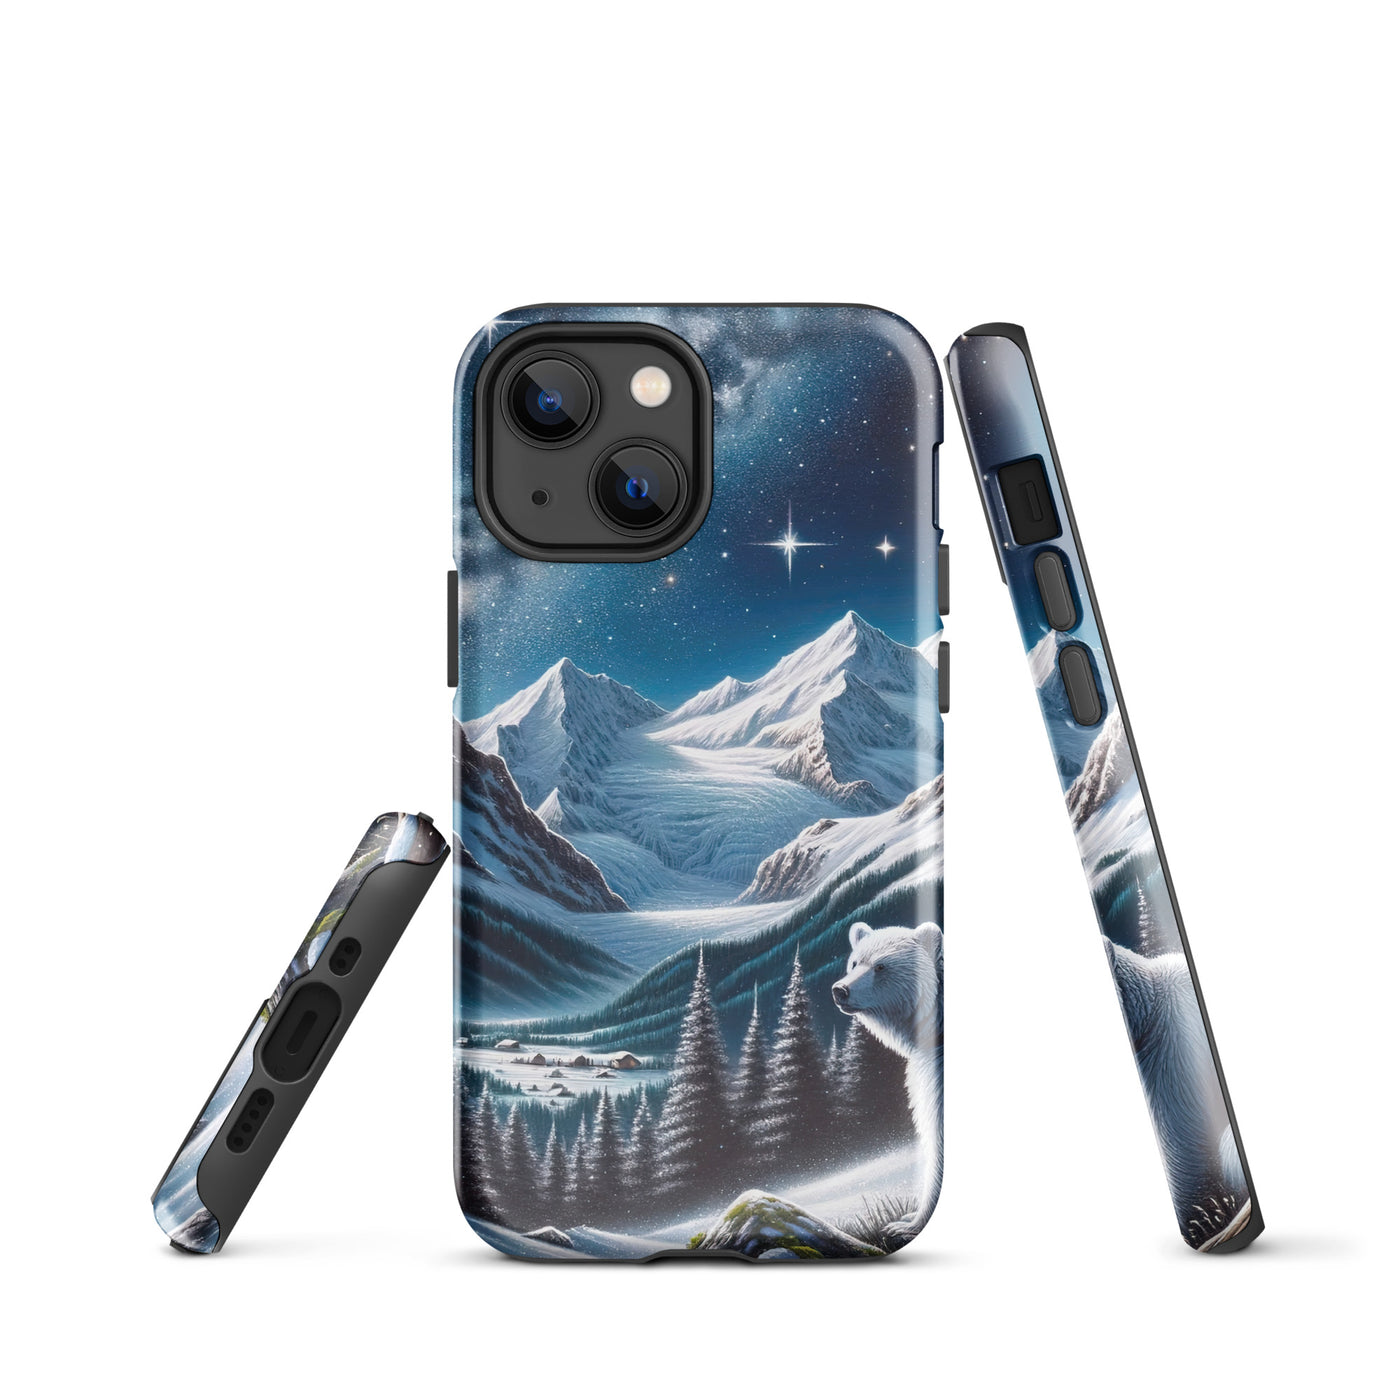 Sternennacht und Eisbär: Acrylgemälde mit Milchstraße, Alpen und schneebedeckte Gipfel - iPhone Schutzhülle (robust) camping xxx yyy zzz iPhone 13 mini